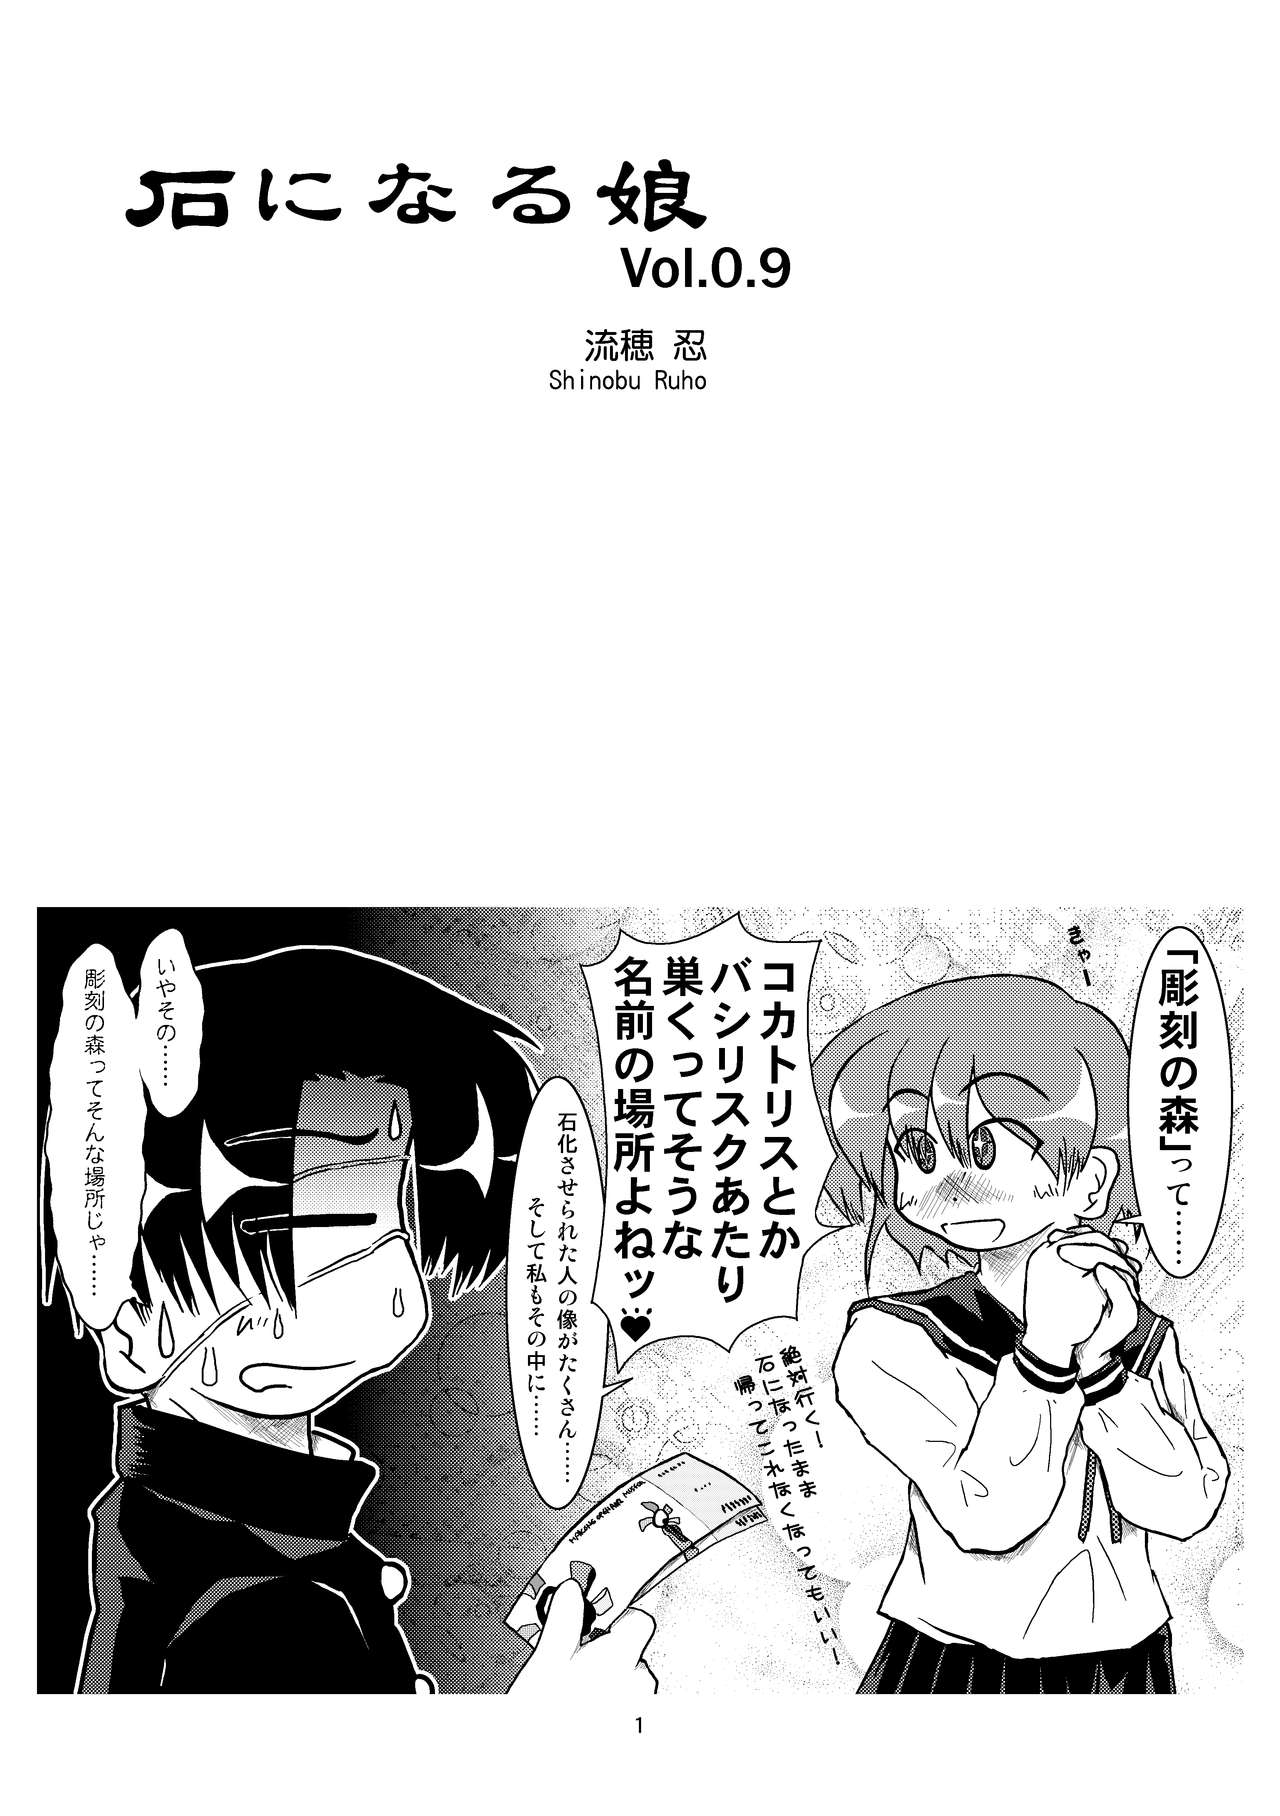 [Mumeigei (Ruho Shinobu)] Ishi ni Naru Musume Vol. 0.9 [Digital] 2